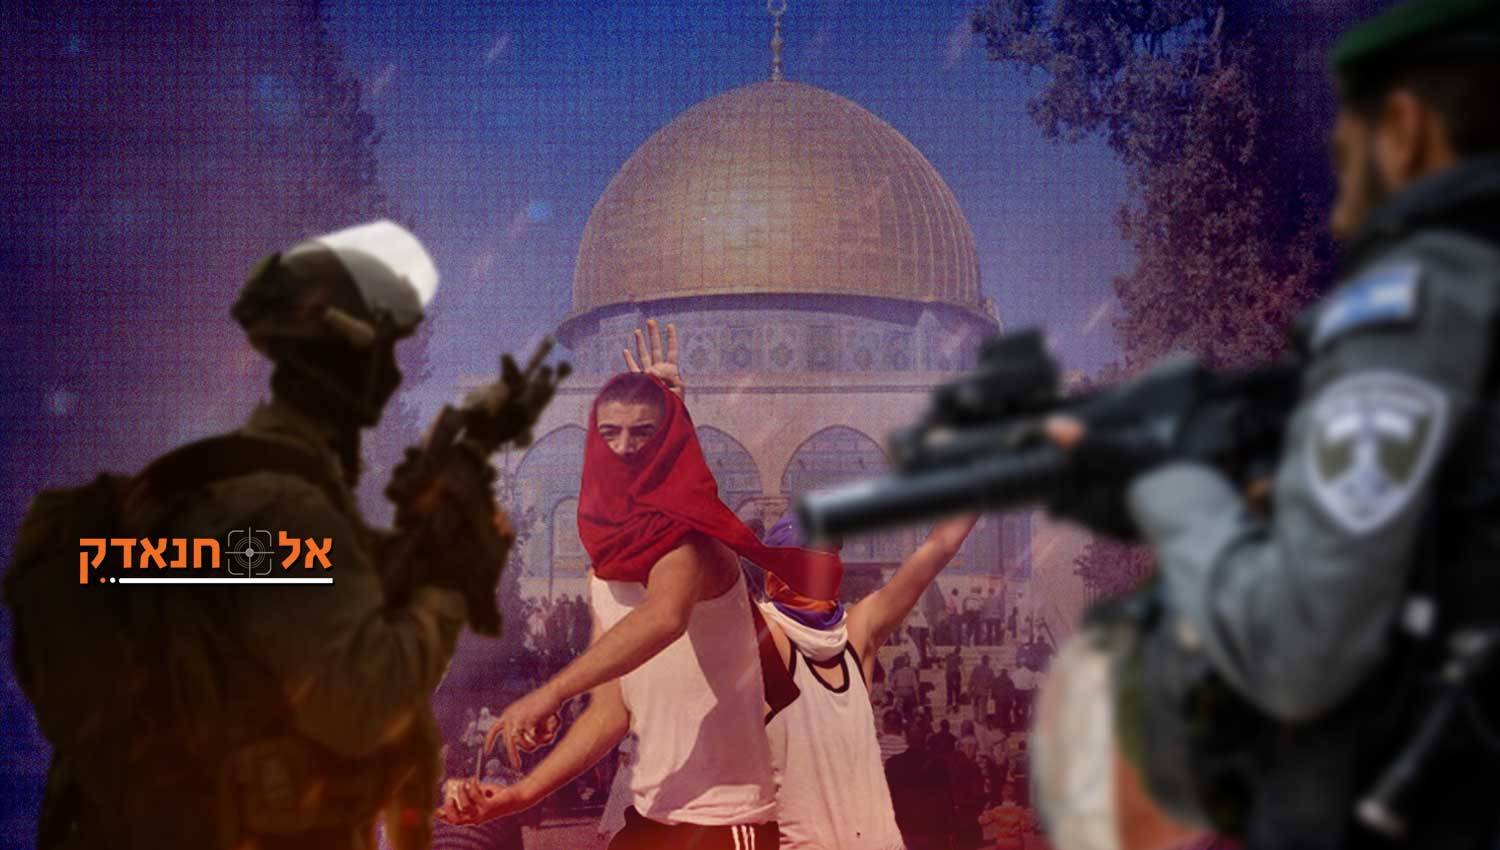 צעדים ישראליים זהירים: איך יהיה הרמדאן בירושלים?